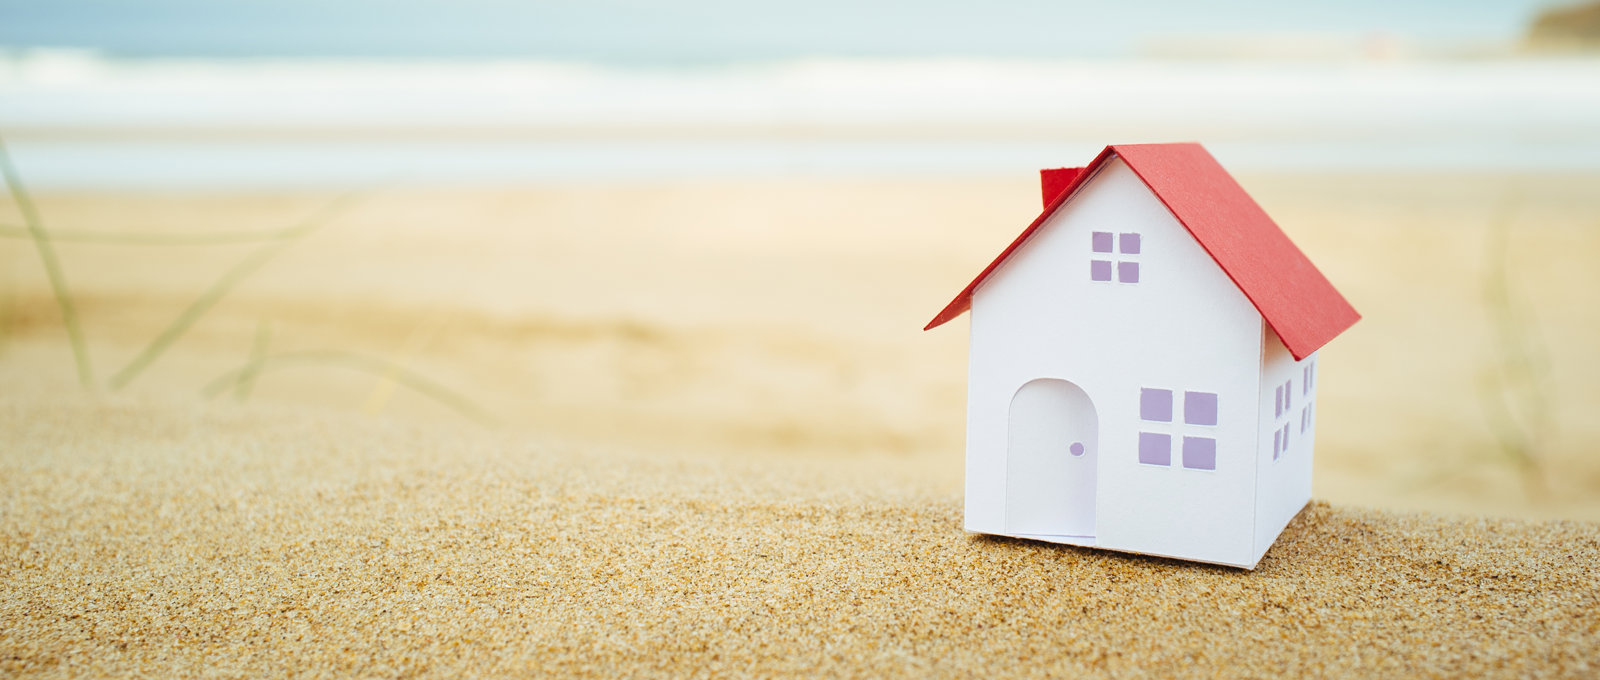 A model of a house sat on a sandy beach.